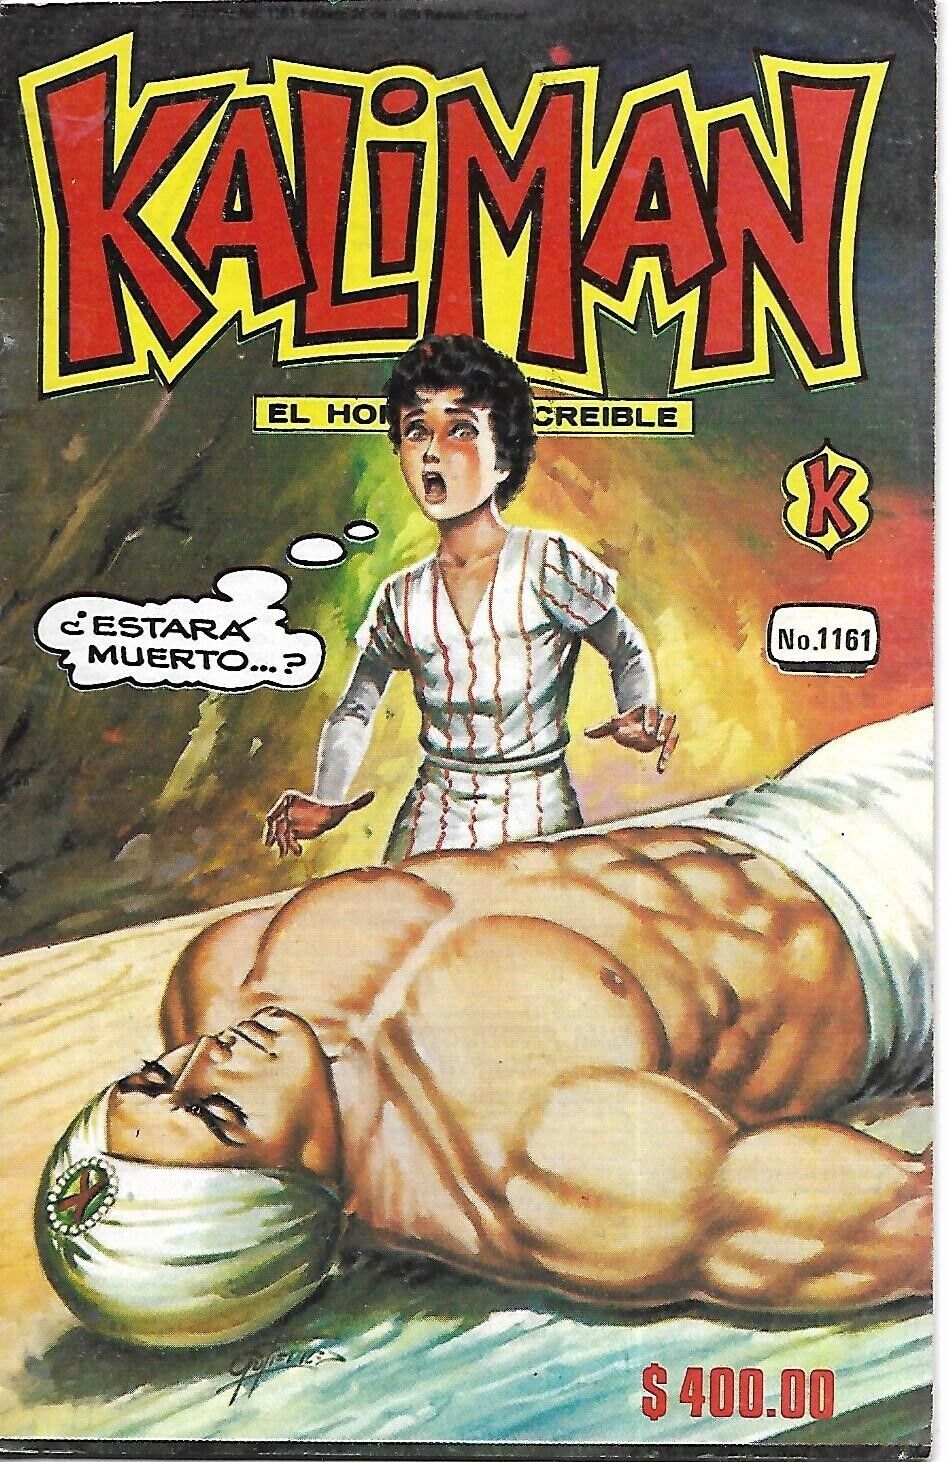 Kaliman El Hombre Increible #1161 - Febrero 26, 1988 - Mexico